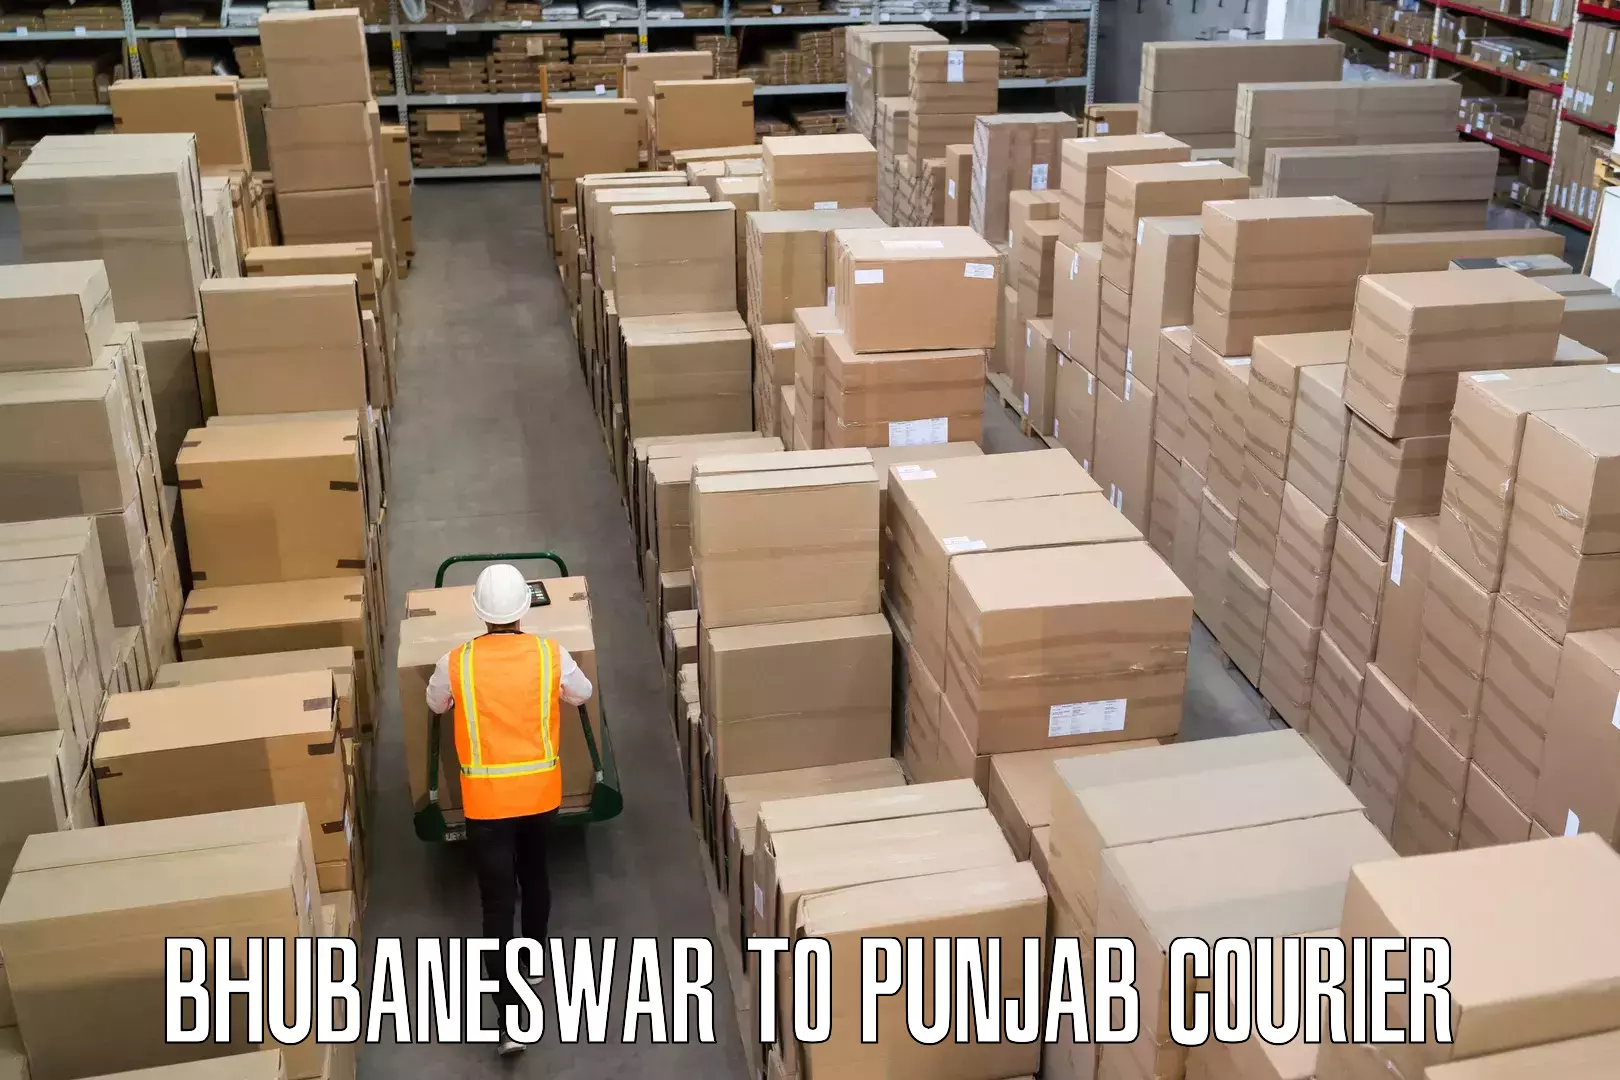 Baggage relocation service Bhubaneswar to Punjab